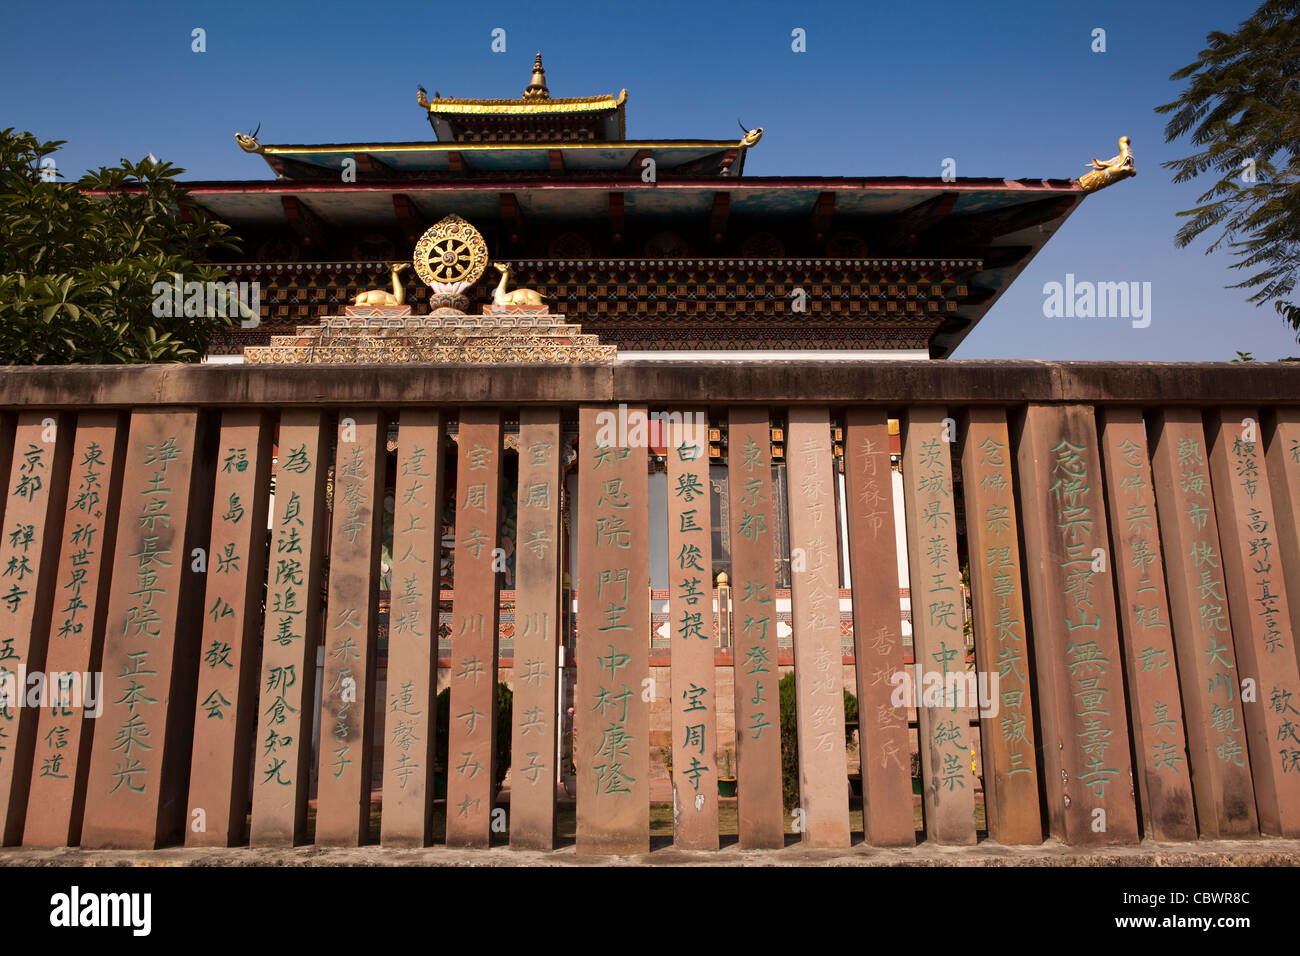 L'Inde, le Bihar, Bodhgaya, Bouddhisme, temple japonais clôture avec scripts sculpté Banque D'Images